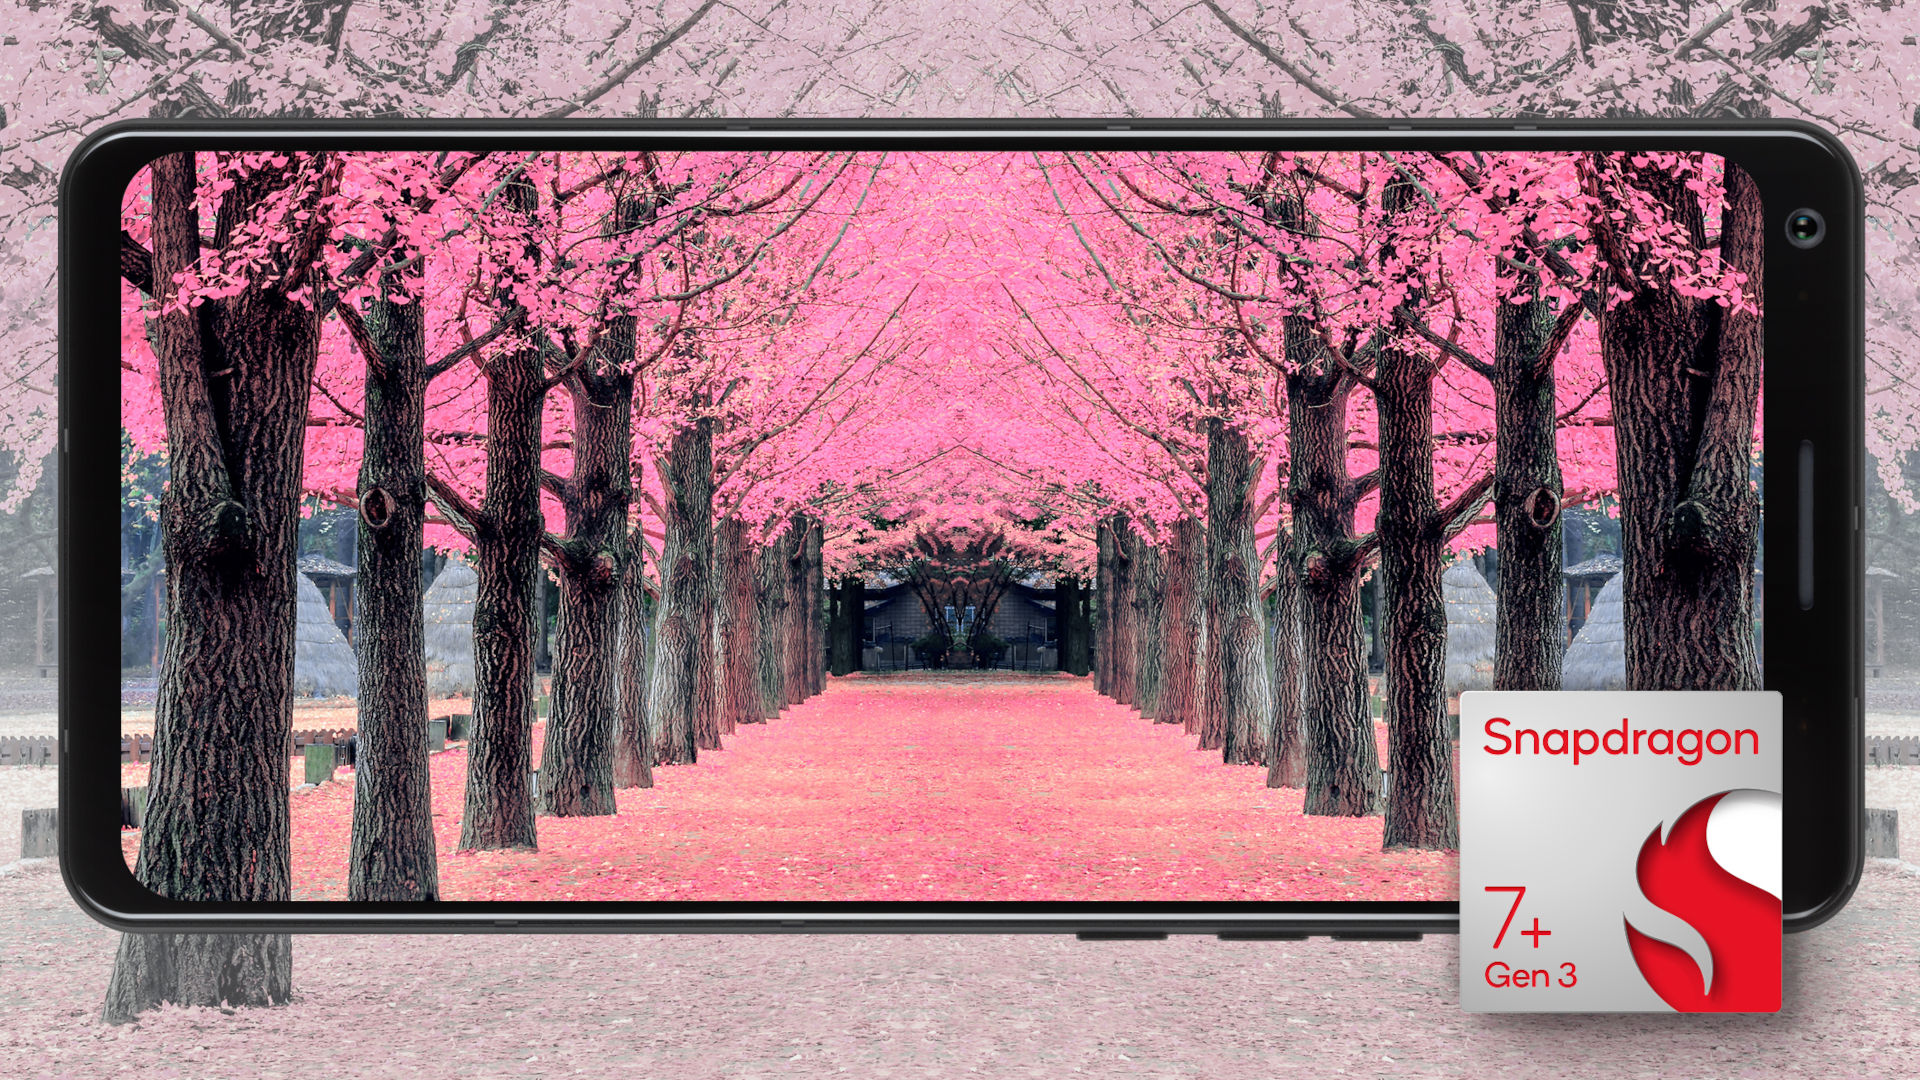 Un teléfono Snapdragon 7 Plus Gen 3 tomando una fotografía de árboles rosados.